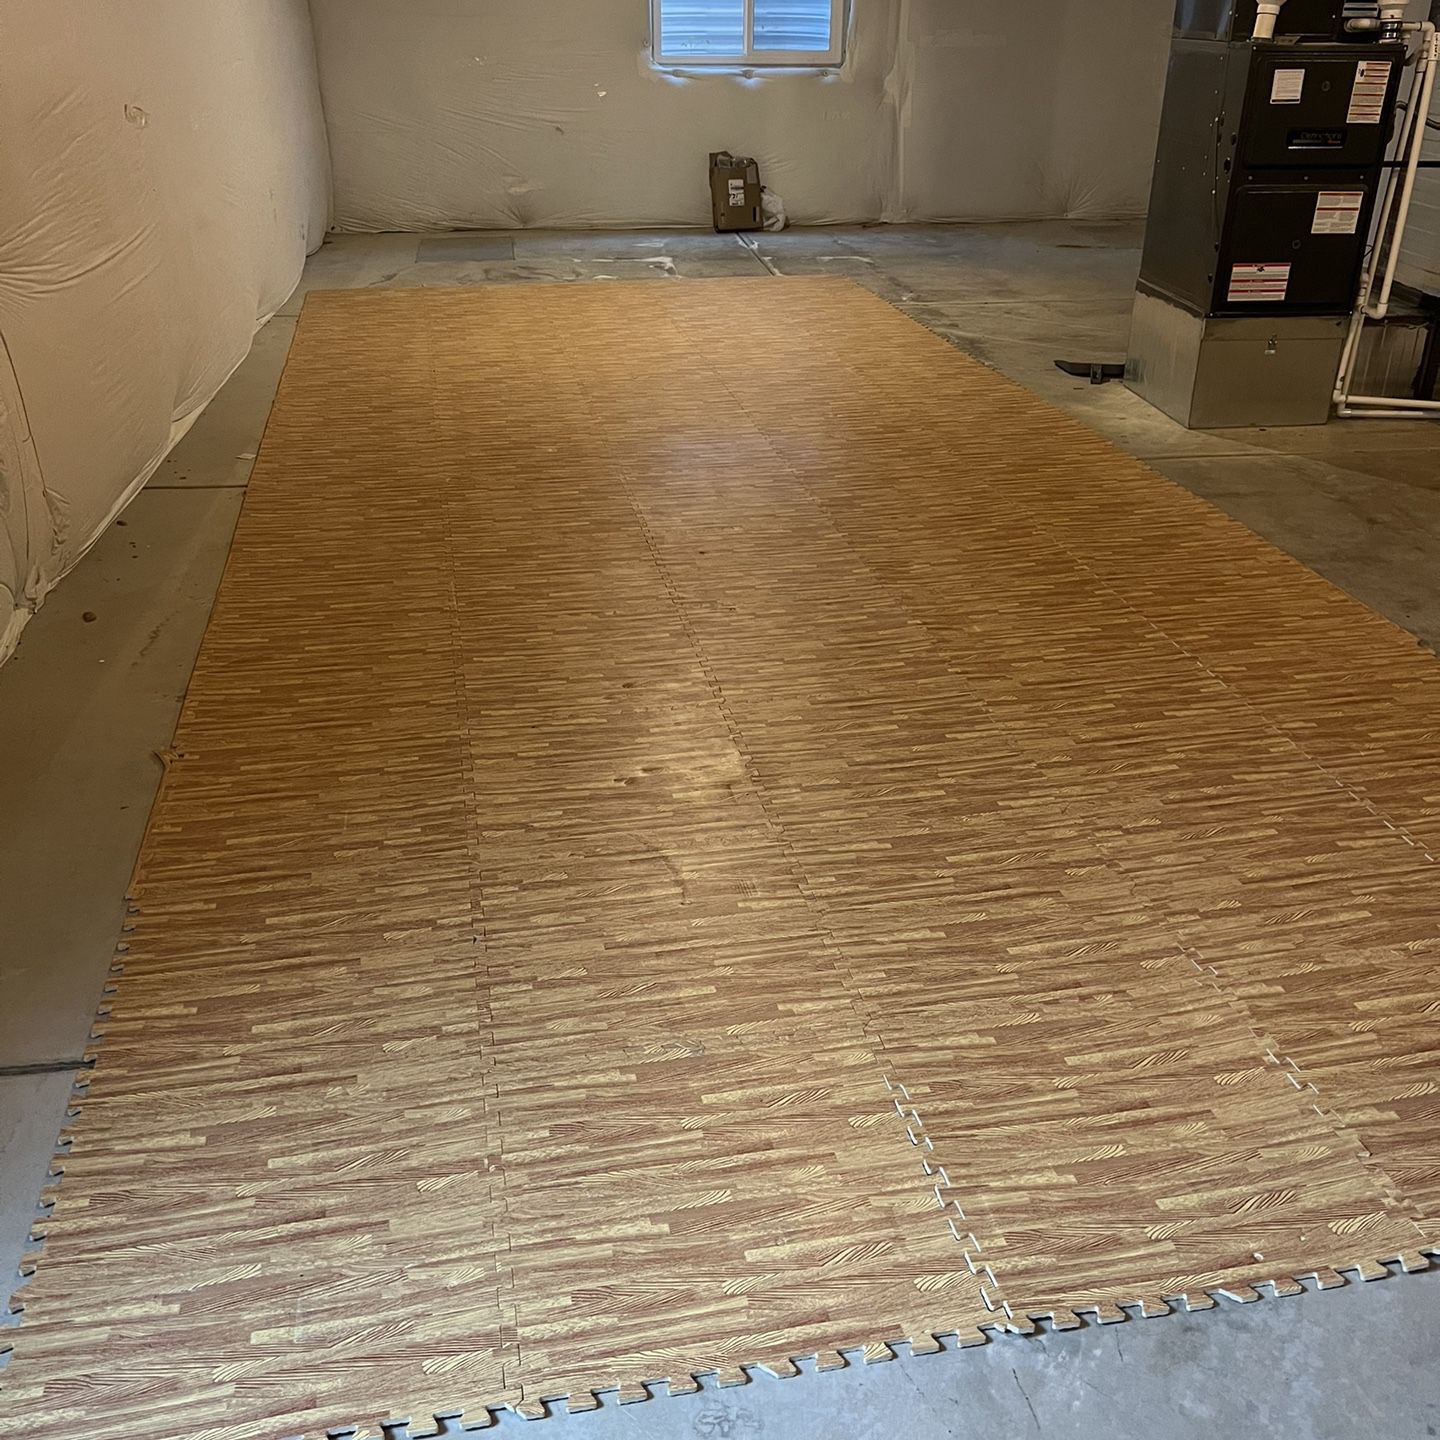 2’x2’ Foam Floor Tiles - Wood - 60 Total - 240 Sq Ft 